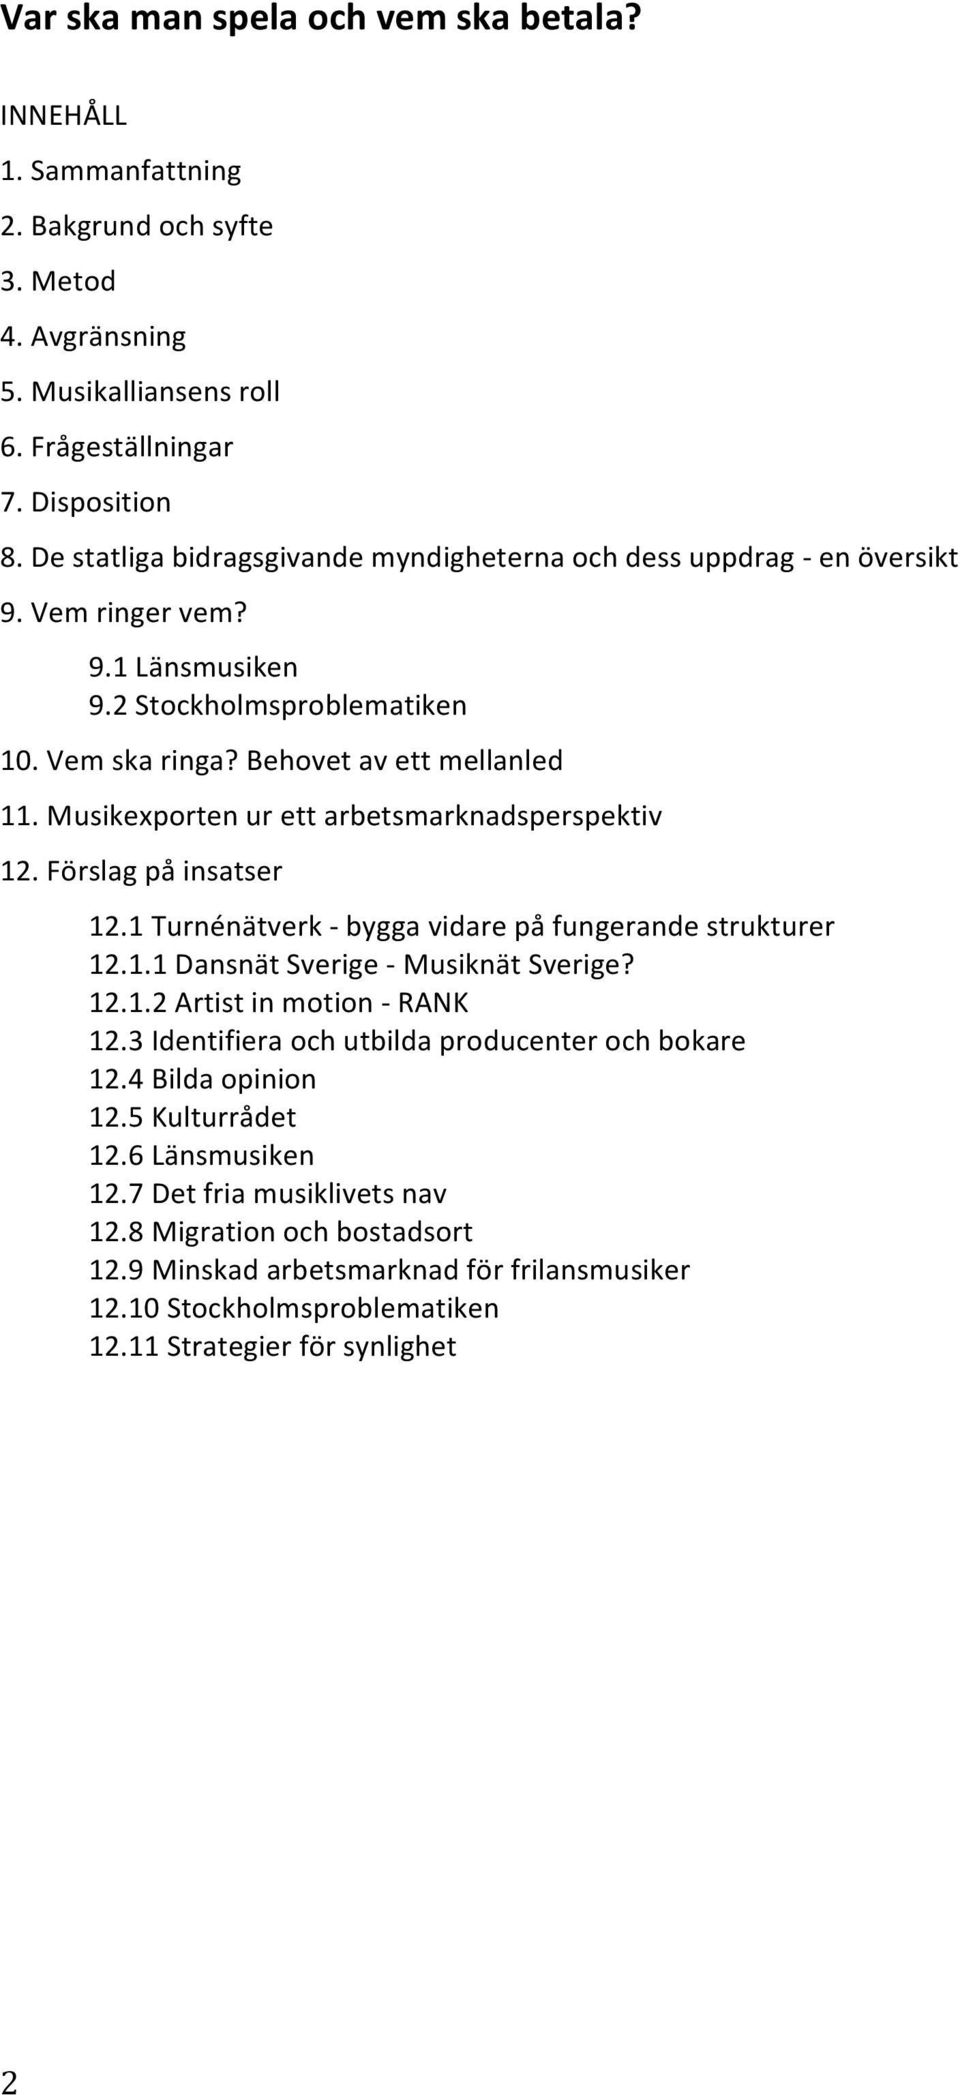 Musikexporten ur ett arbetsmarknadsperspektiv 12. Förslag på insatser 12.1 Turnénätverk - bygga vidare på fungerande strukturer 12.1.1 Dansnät Sverige - Musiknät Sverige? 12.1.2 Artist in motion - RANK 12.